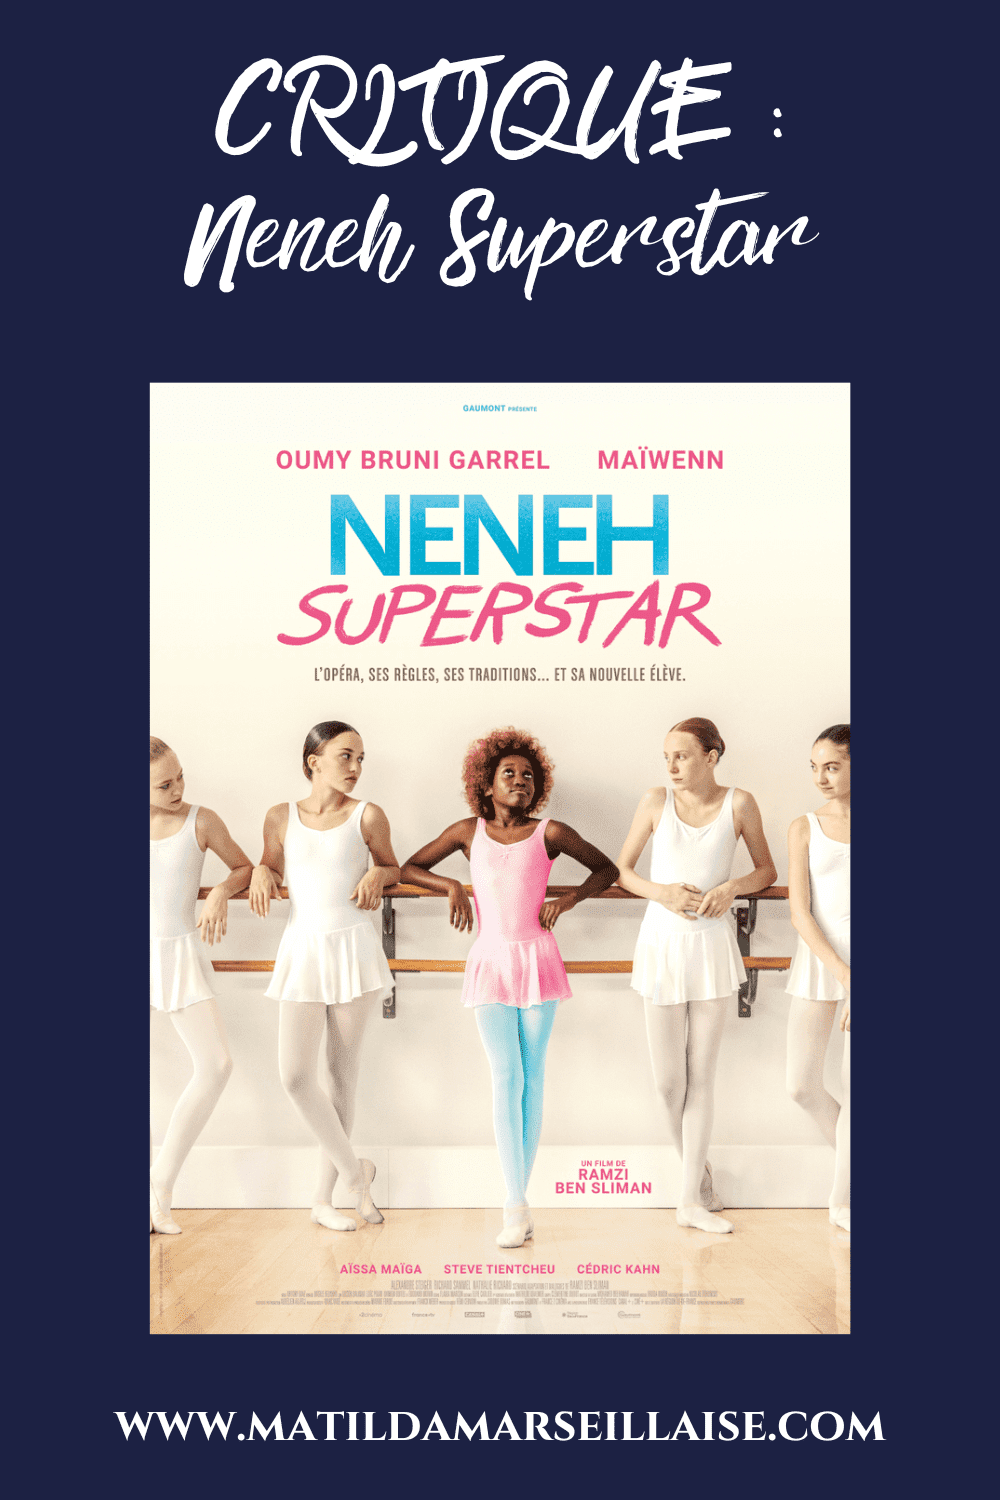 Neneh Superstar est un film sur la lutte pour ses rêves, quels que soient les obstacles